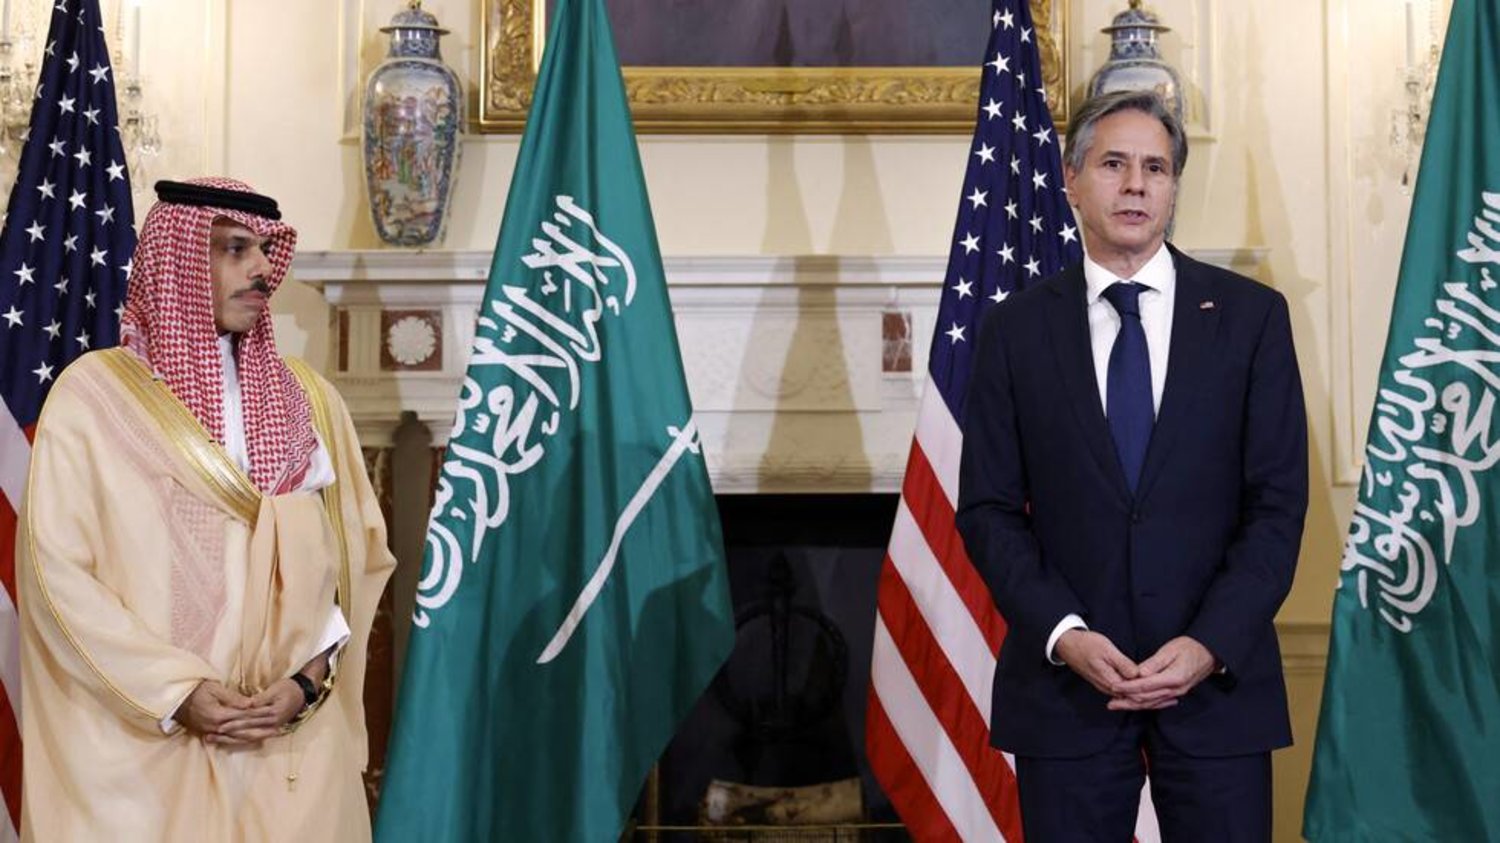 في الوقت الذي توسّع فيه الرياض خياراتها الاستراتيجية وفقاً لمراقبين فإن العلاقة مع الولايات المتحدة تحظى بتأكيد مستمر لعمقها وأبعادها الاستراتيجية (أ.ف.ب)